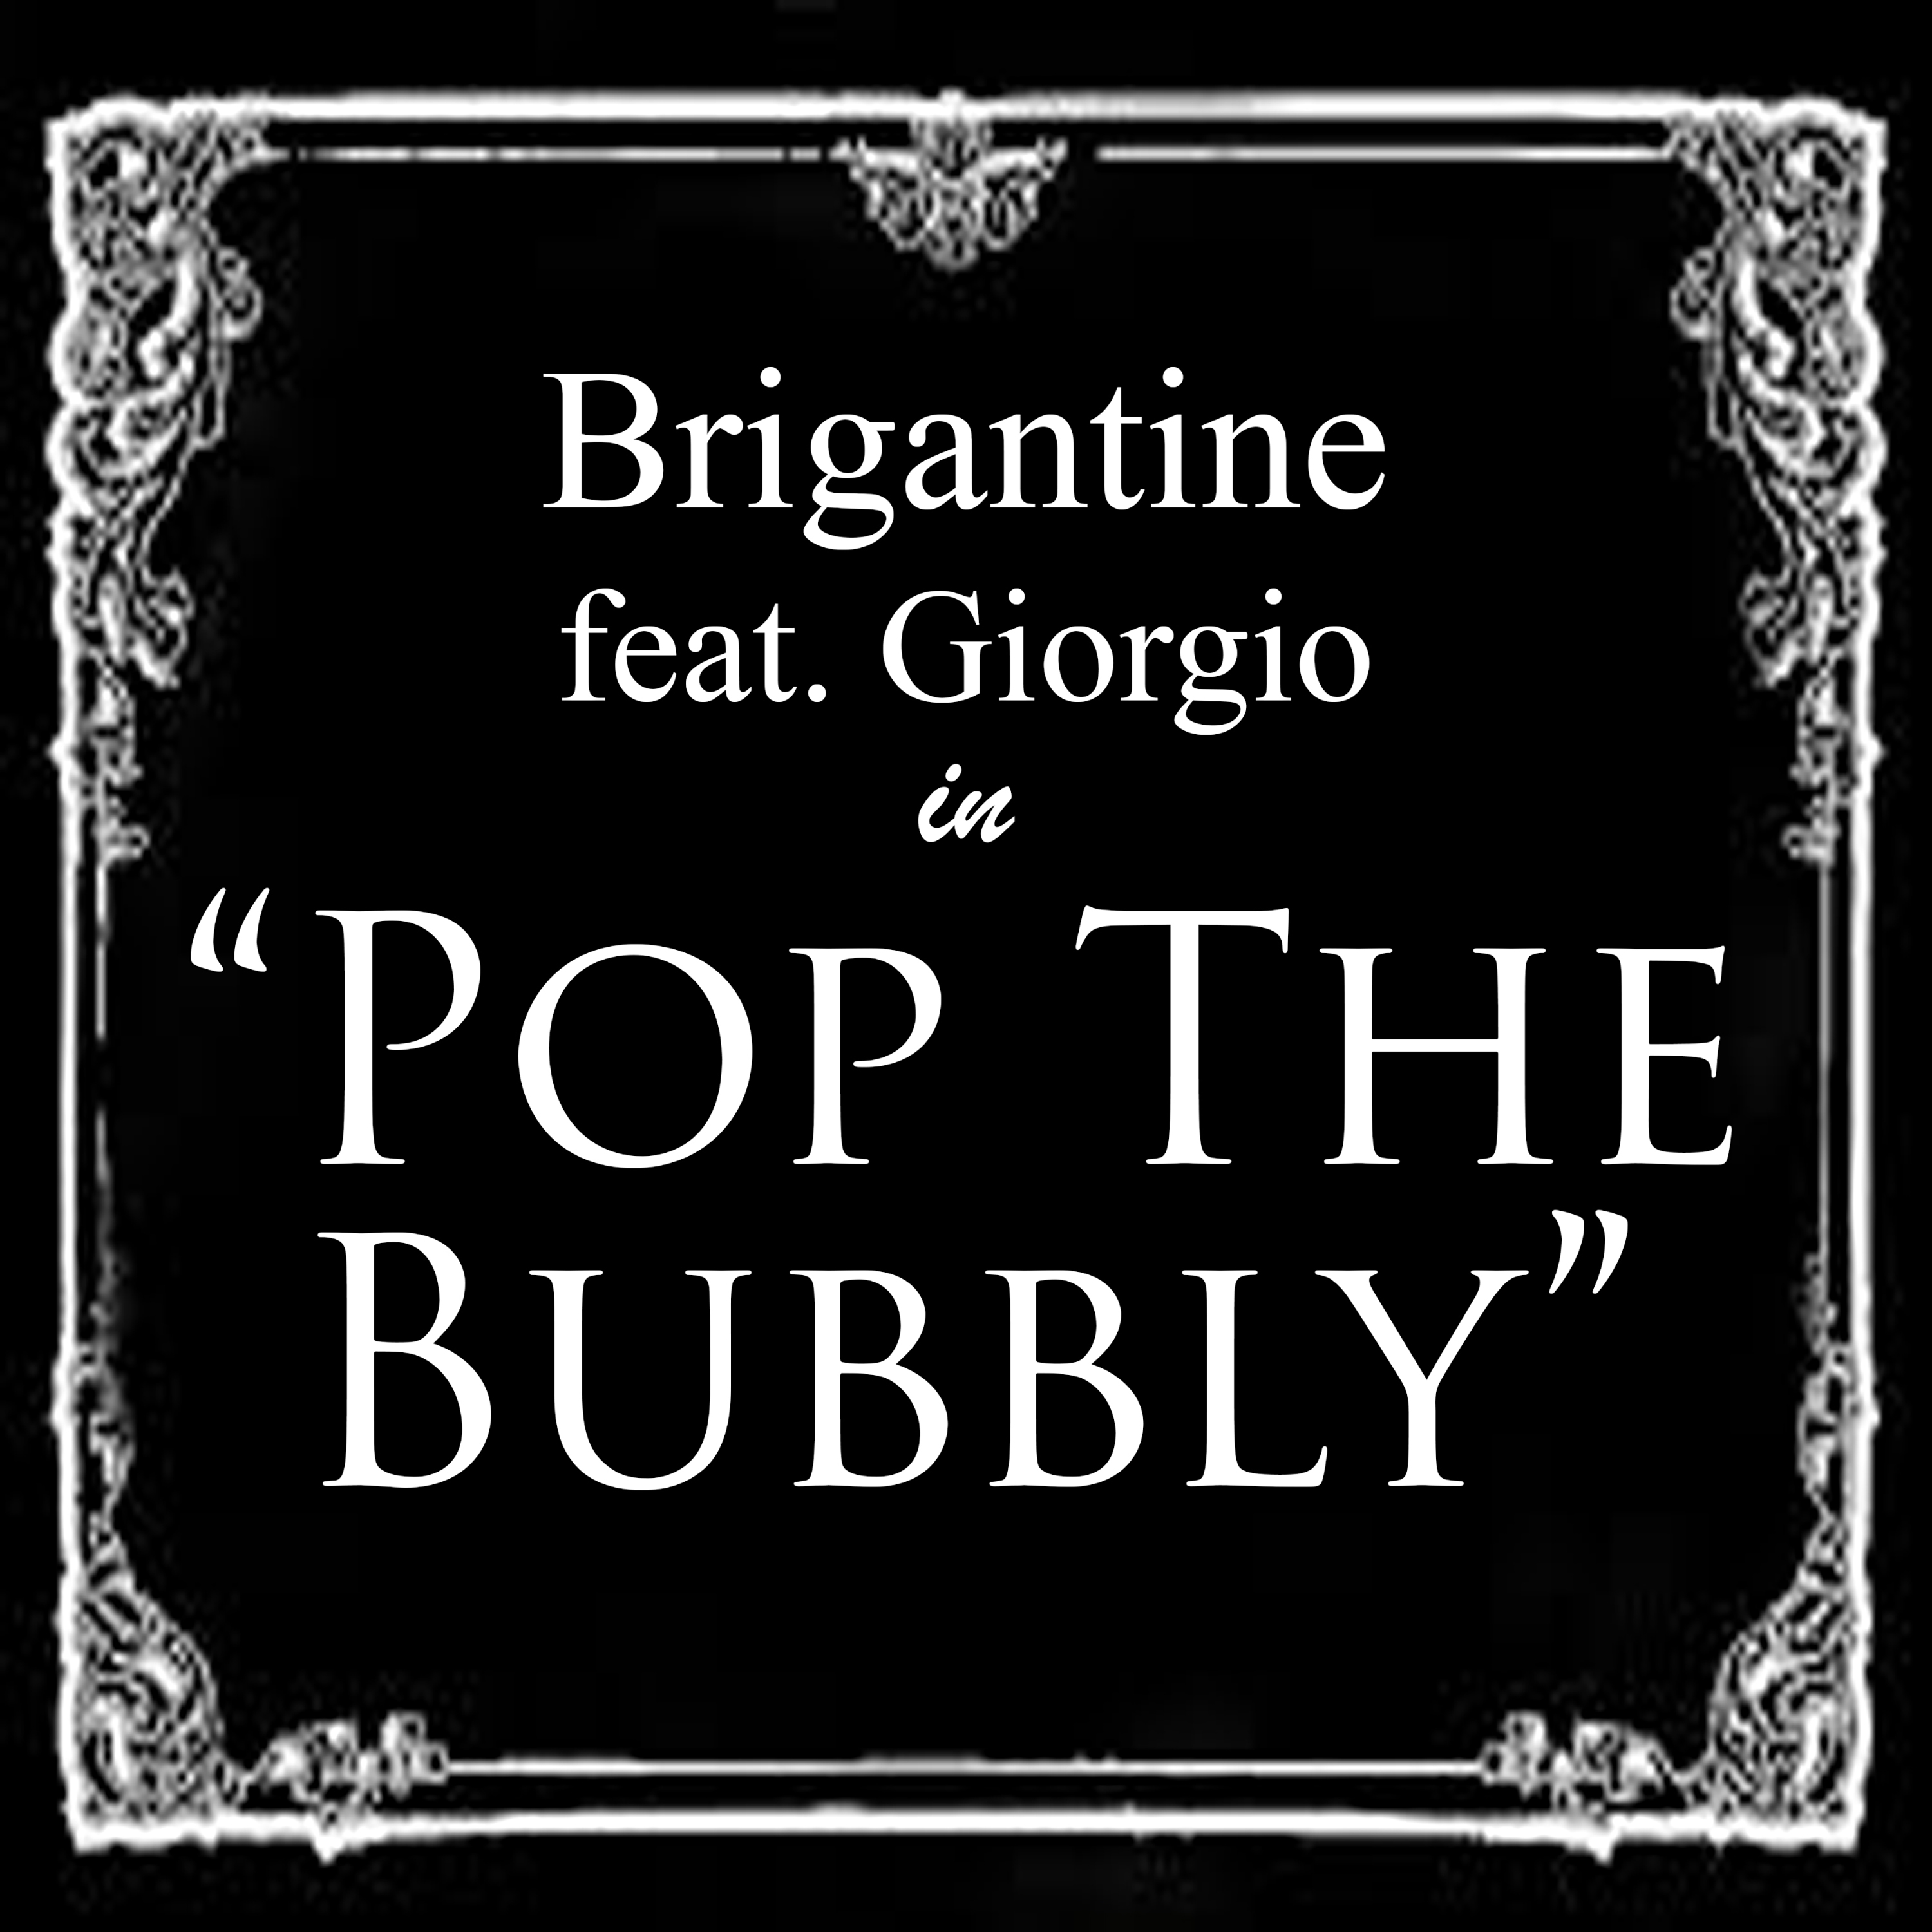 Brigantine - Pop The Bubbly (feat. Giorgio) - Cover Art